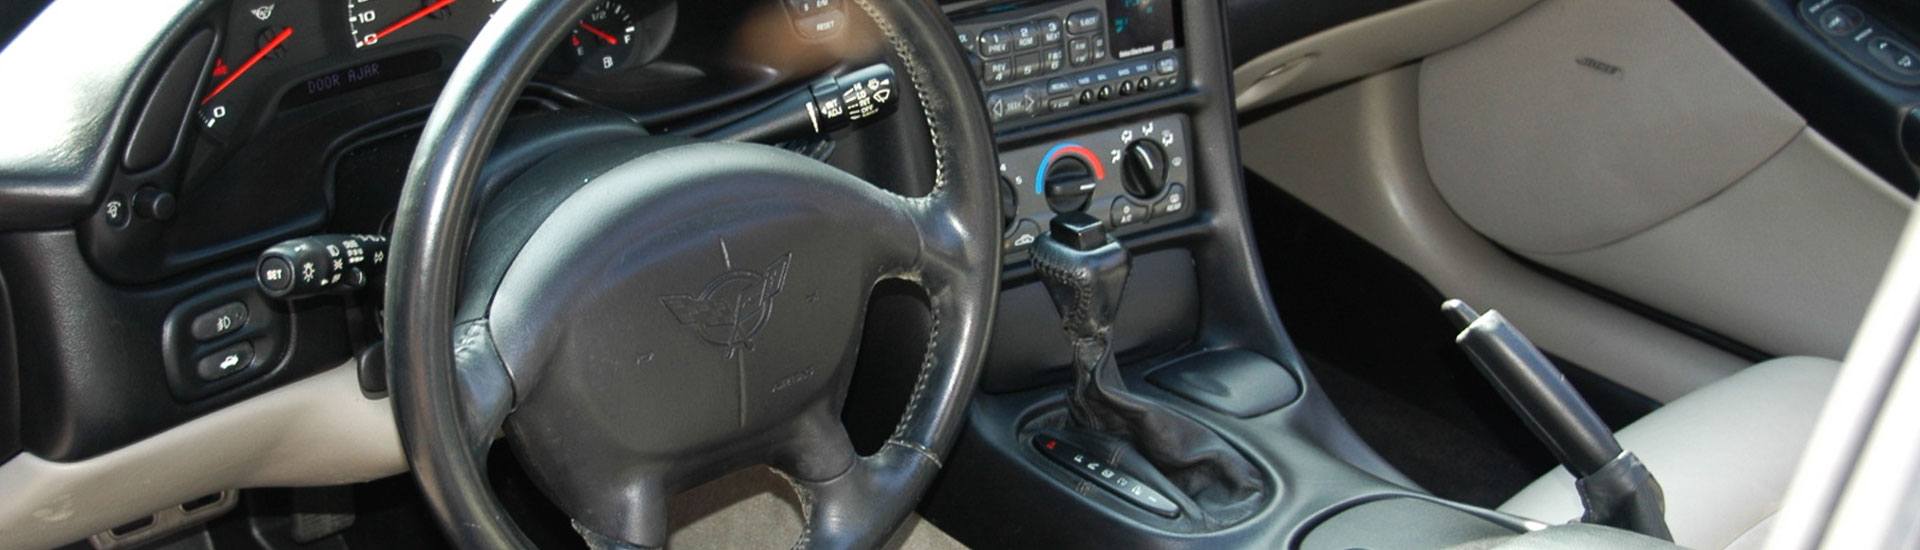 1999 Chevrolet Corvette Dash Kits